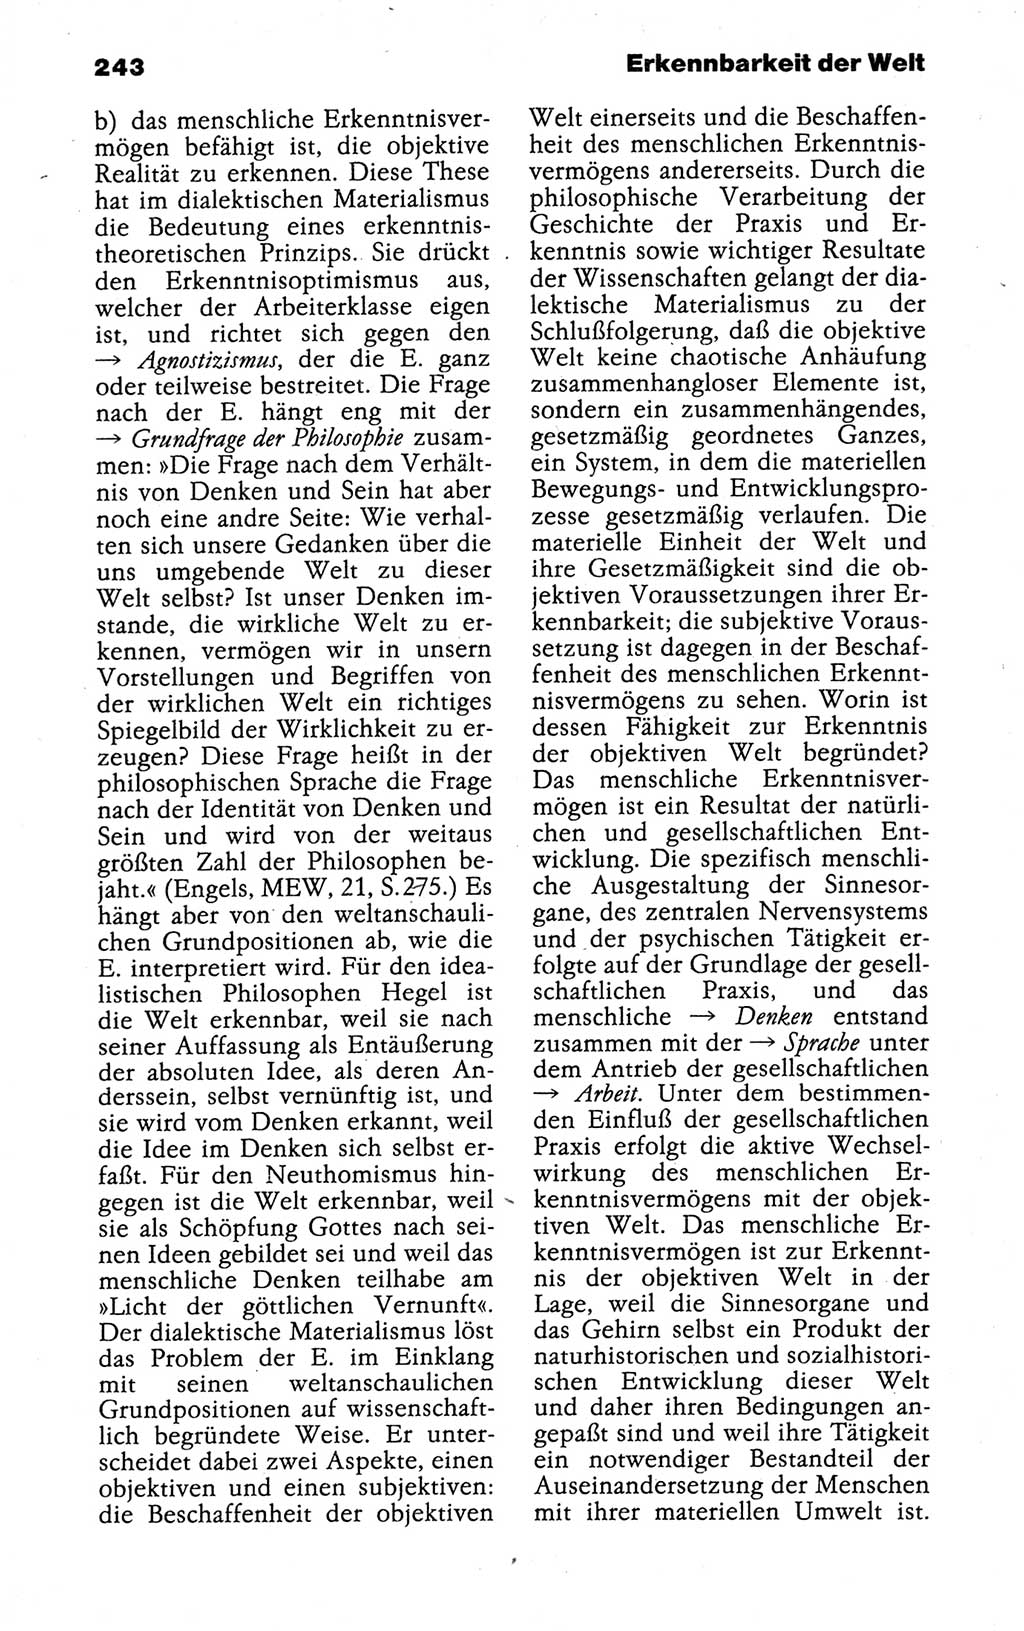 Kleines politisches Wörterbuch [Deutsche Demokratische Republik (DDR)] 1988, Seite 243 (Kl. pol. Wb. DDR 1988, S. 243)